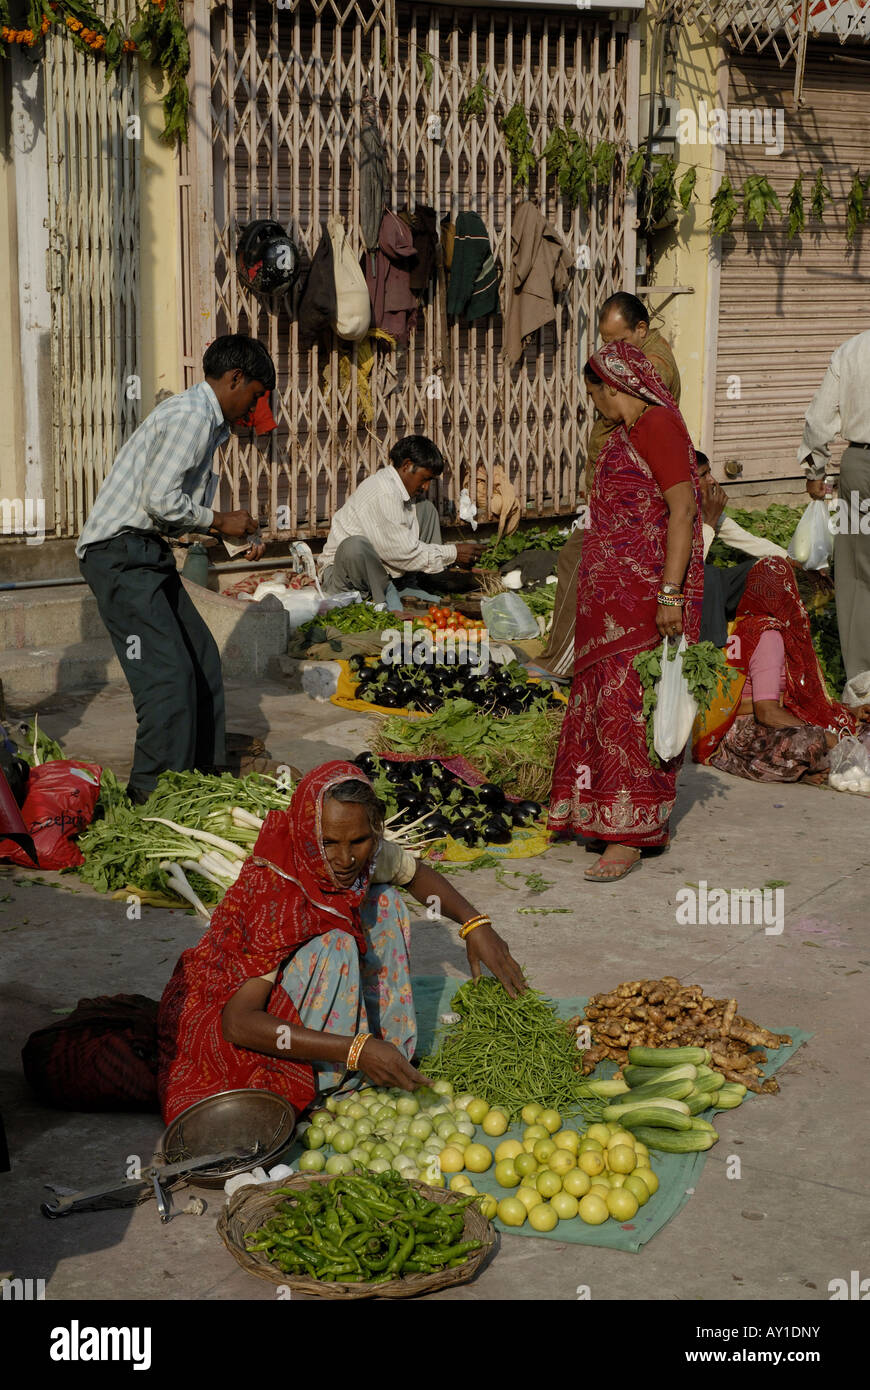 Les fruits et légumes vendus dans un marché de rue dans la région de Jaipur Rajasthan Inde Banque D'Images